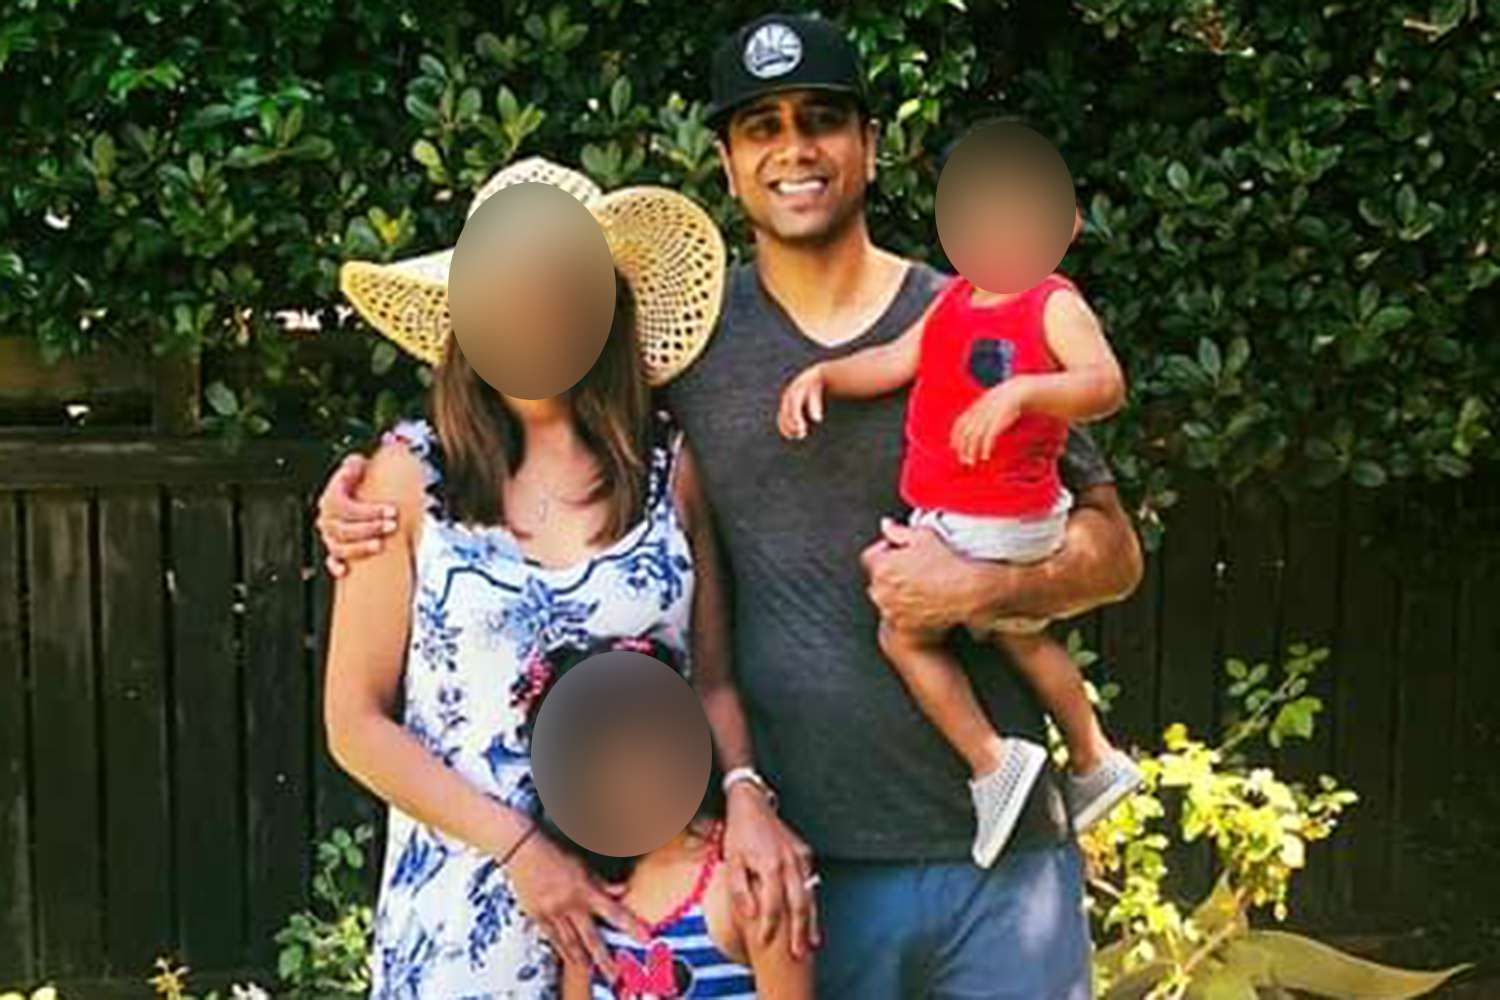 पत्नी और 2 बच्चों के साथ टेस्ला को क्लिफ से निकालने के बाद डॉक्टर पर हत्या के प्रयास का आरोप लगाया गया